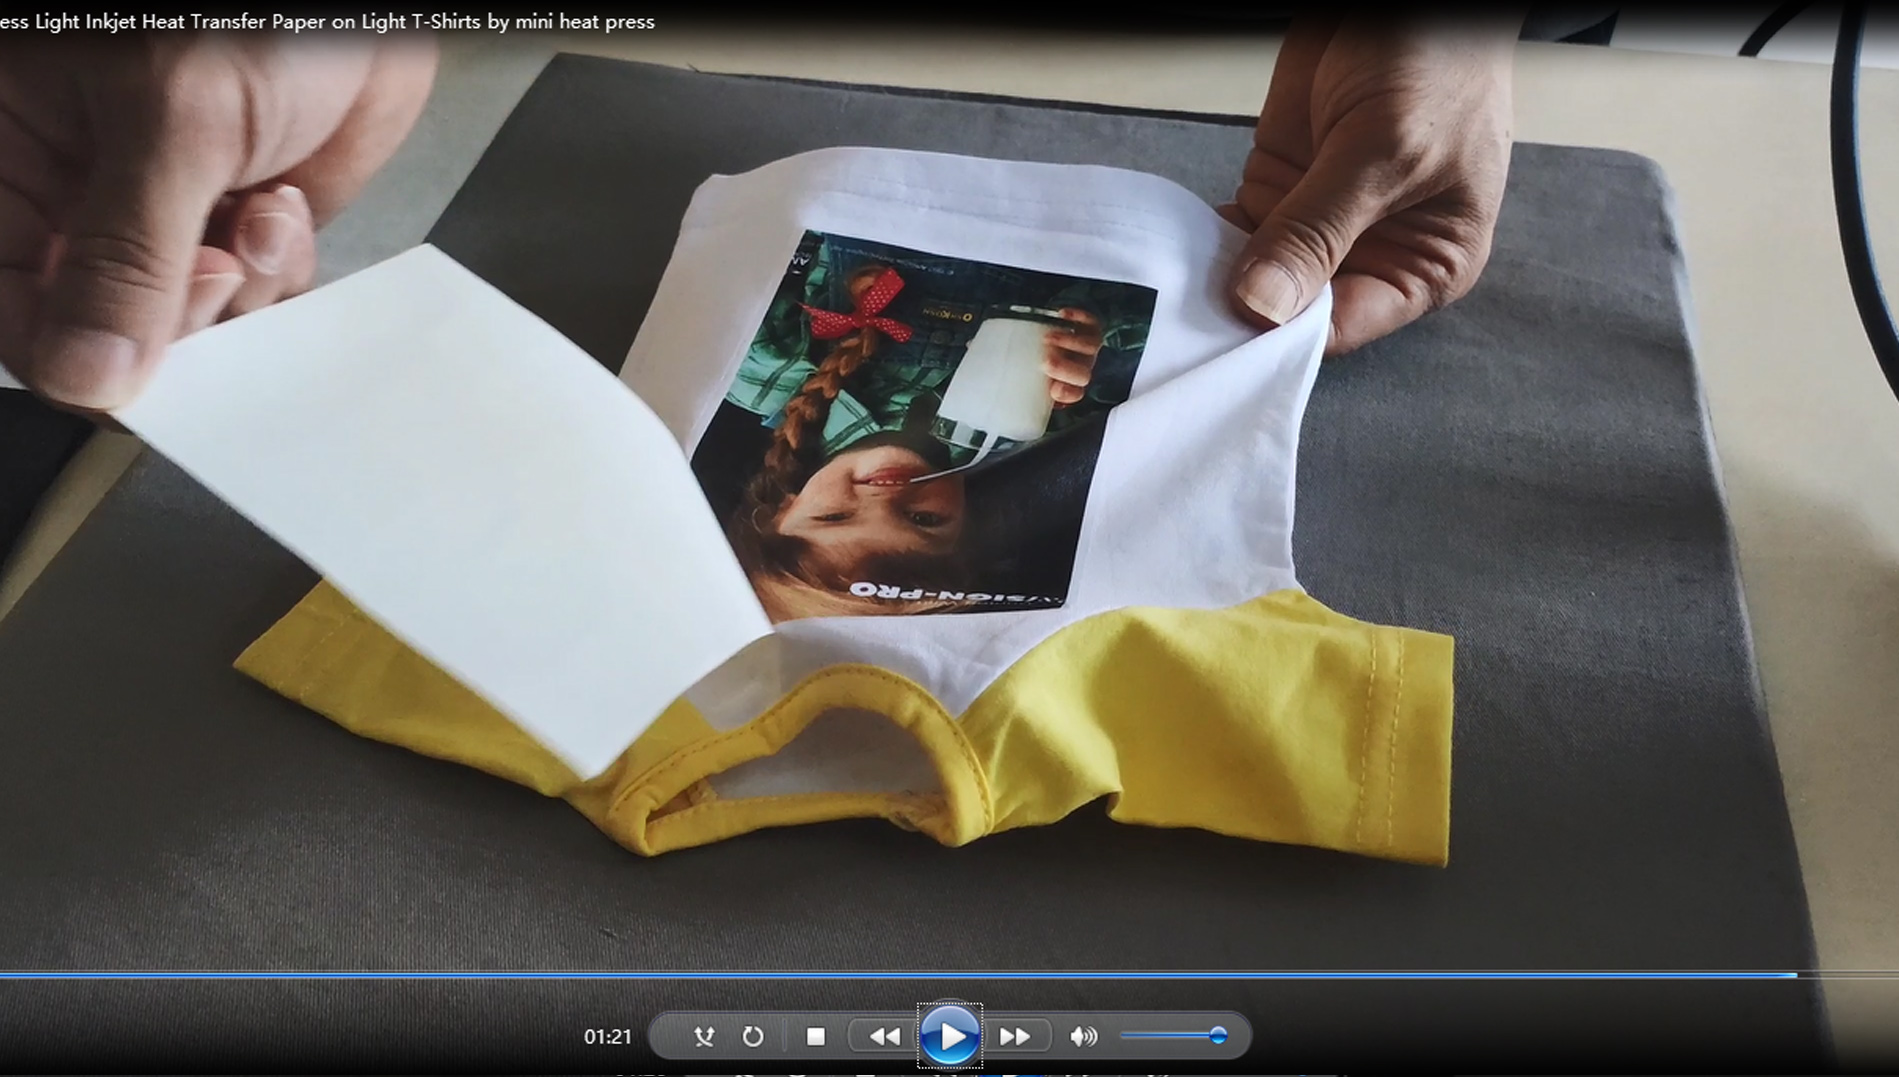 Како притиснути лагани инкјет папир за пренос топлоте на лаке мајице помоћу мини термо преса